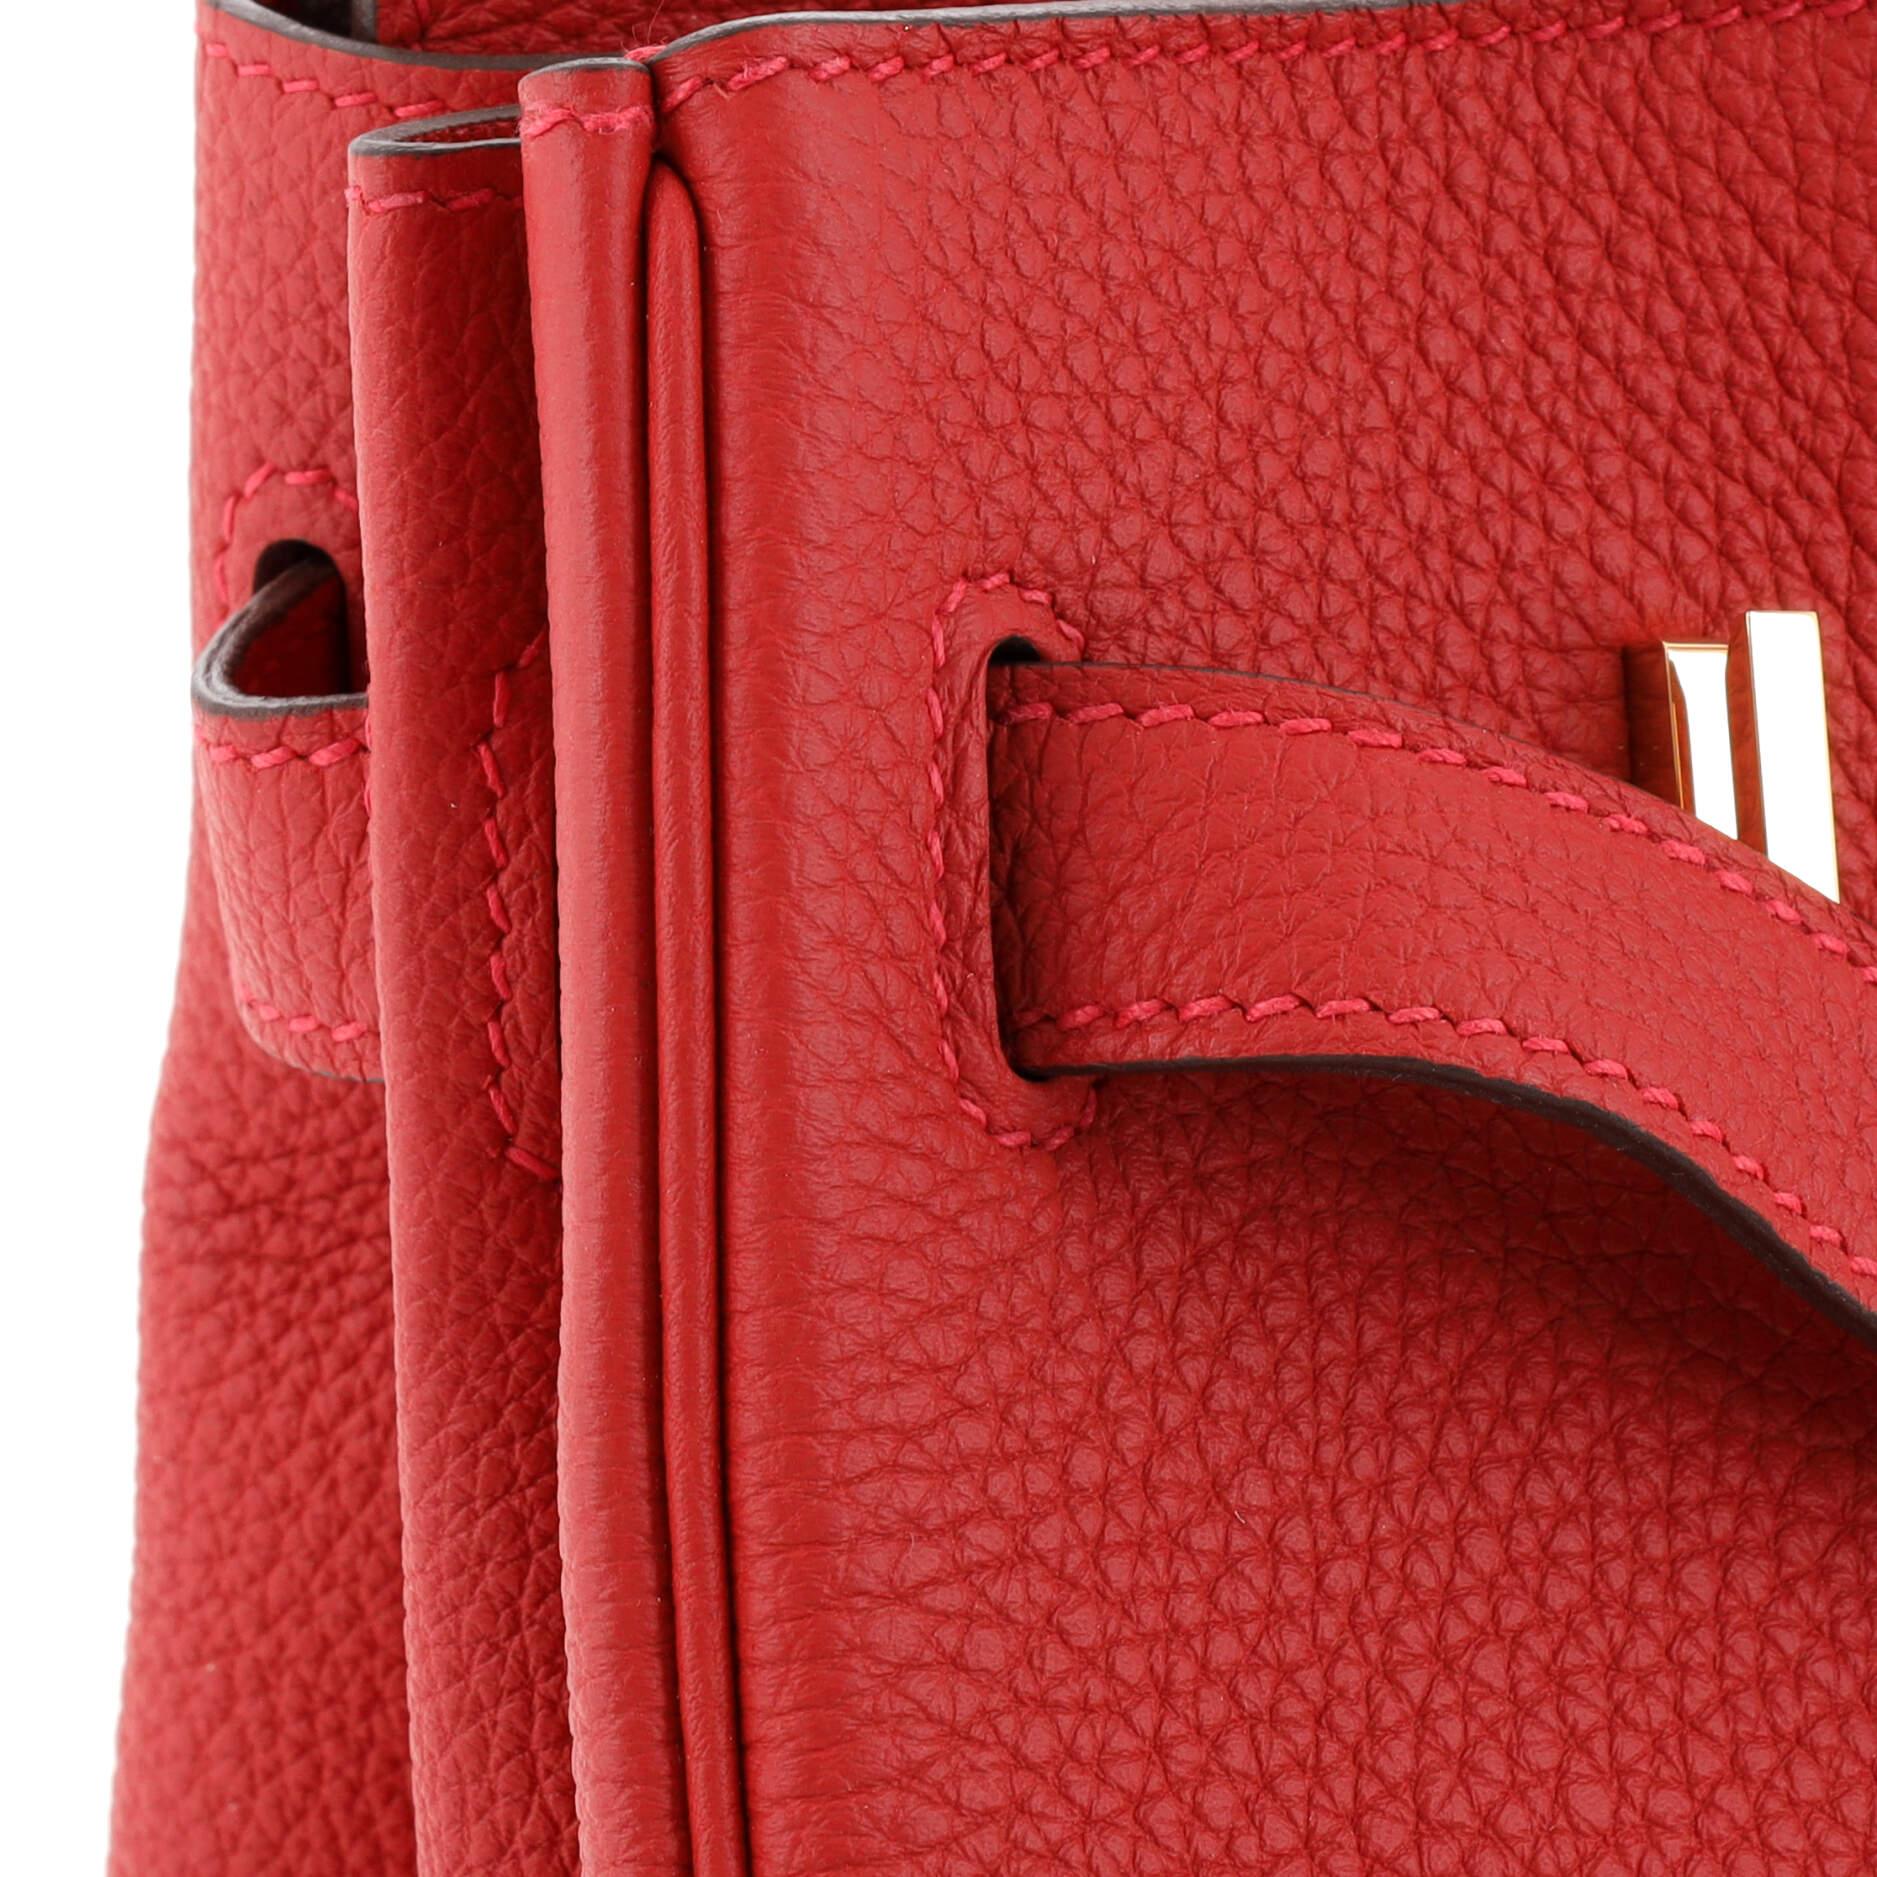 Hermes Birkin Handbag Rouge Vif Togo with Gold Hardware 30 5